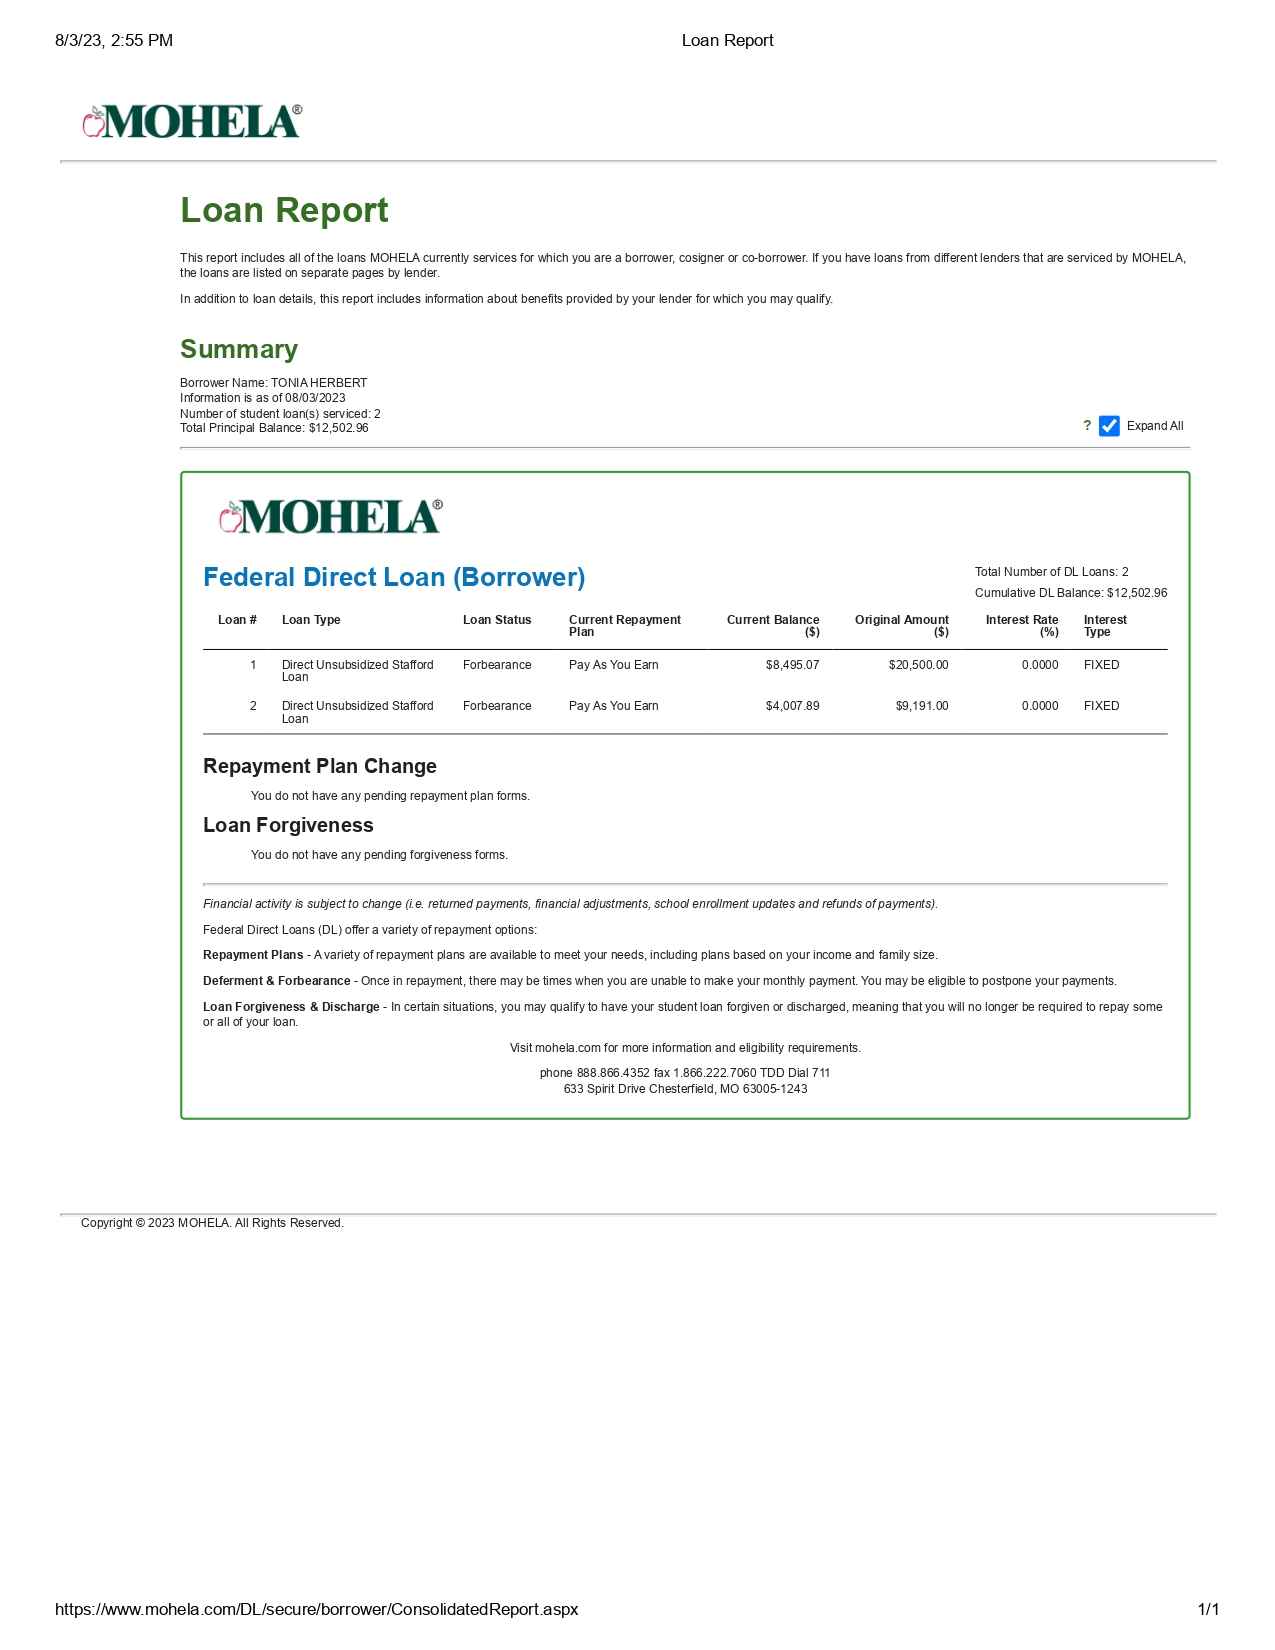 Loan Report 2_page-0001.jpg